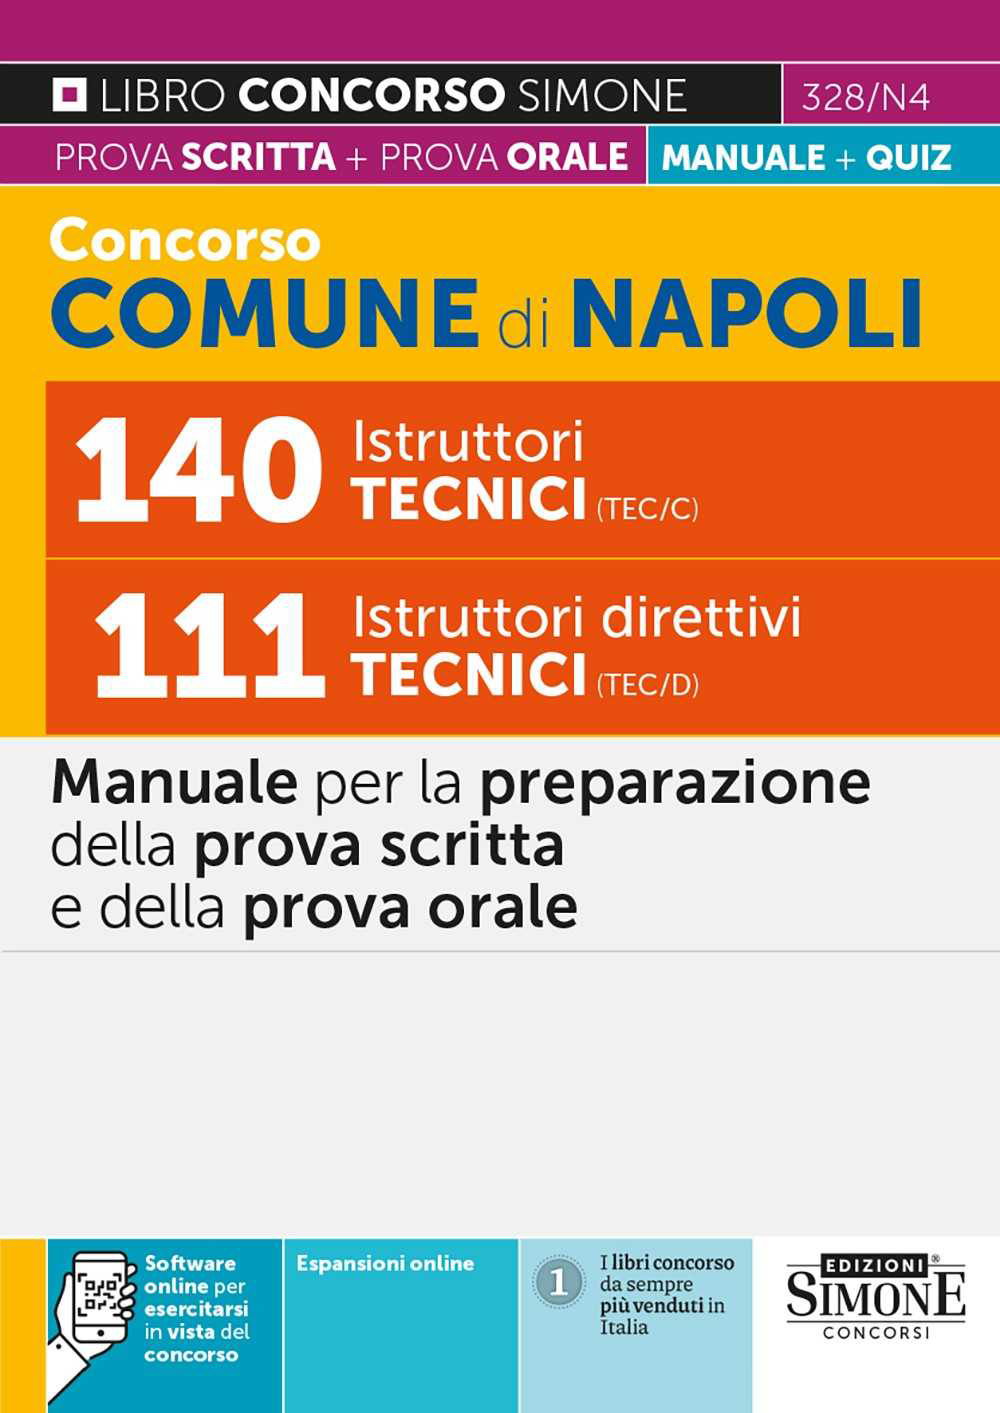 Concorso Comune di Napoli 140 Istruttori Tecnici (TEC/C) – 111 Istruttori direttivi Tecnici (TEC/D) – Manuale - 328/N4